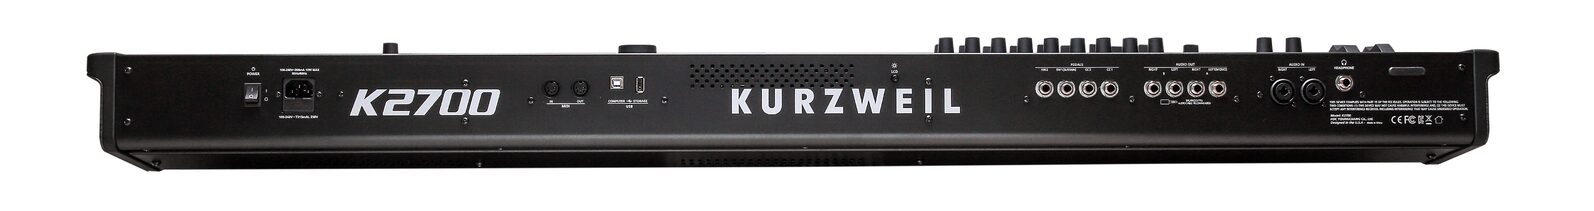 Kurzweil K2700 Workstation